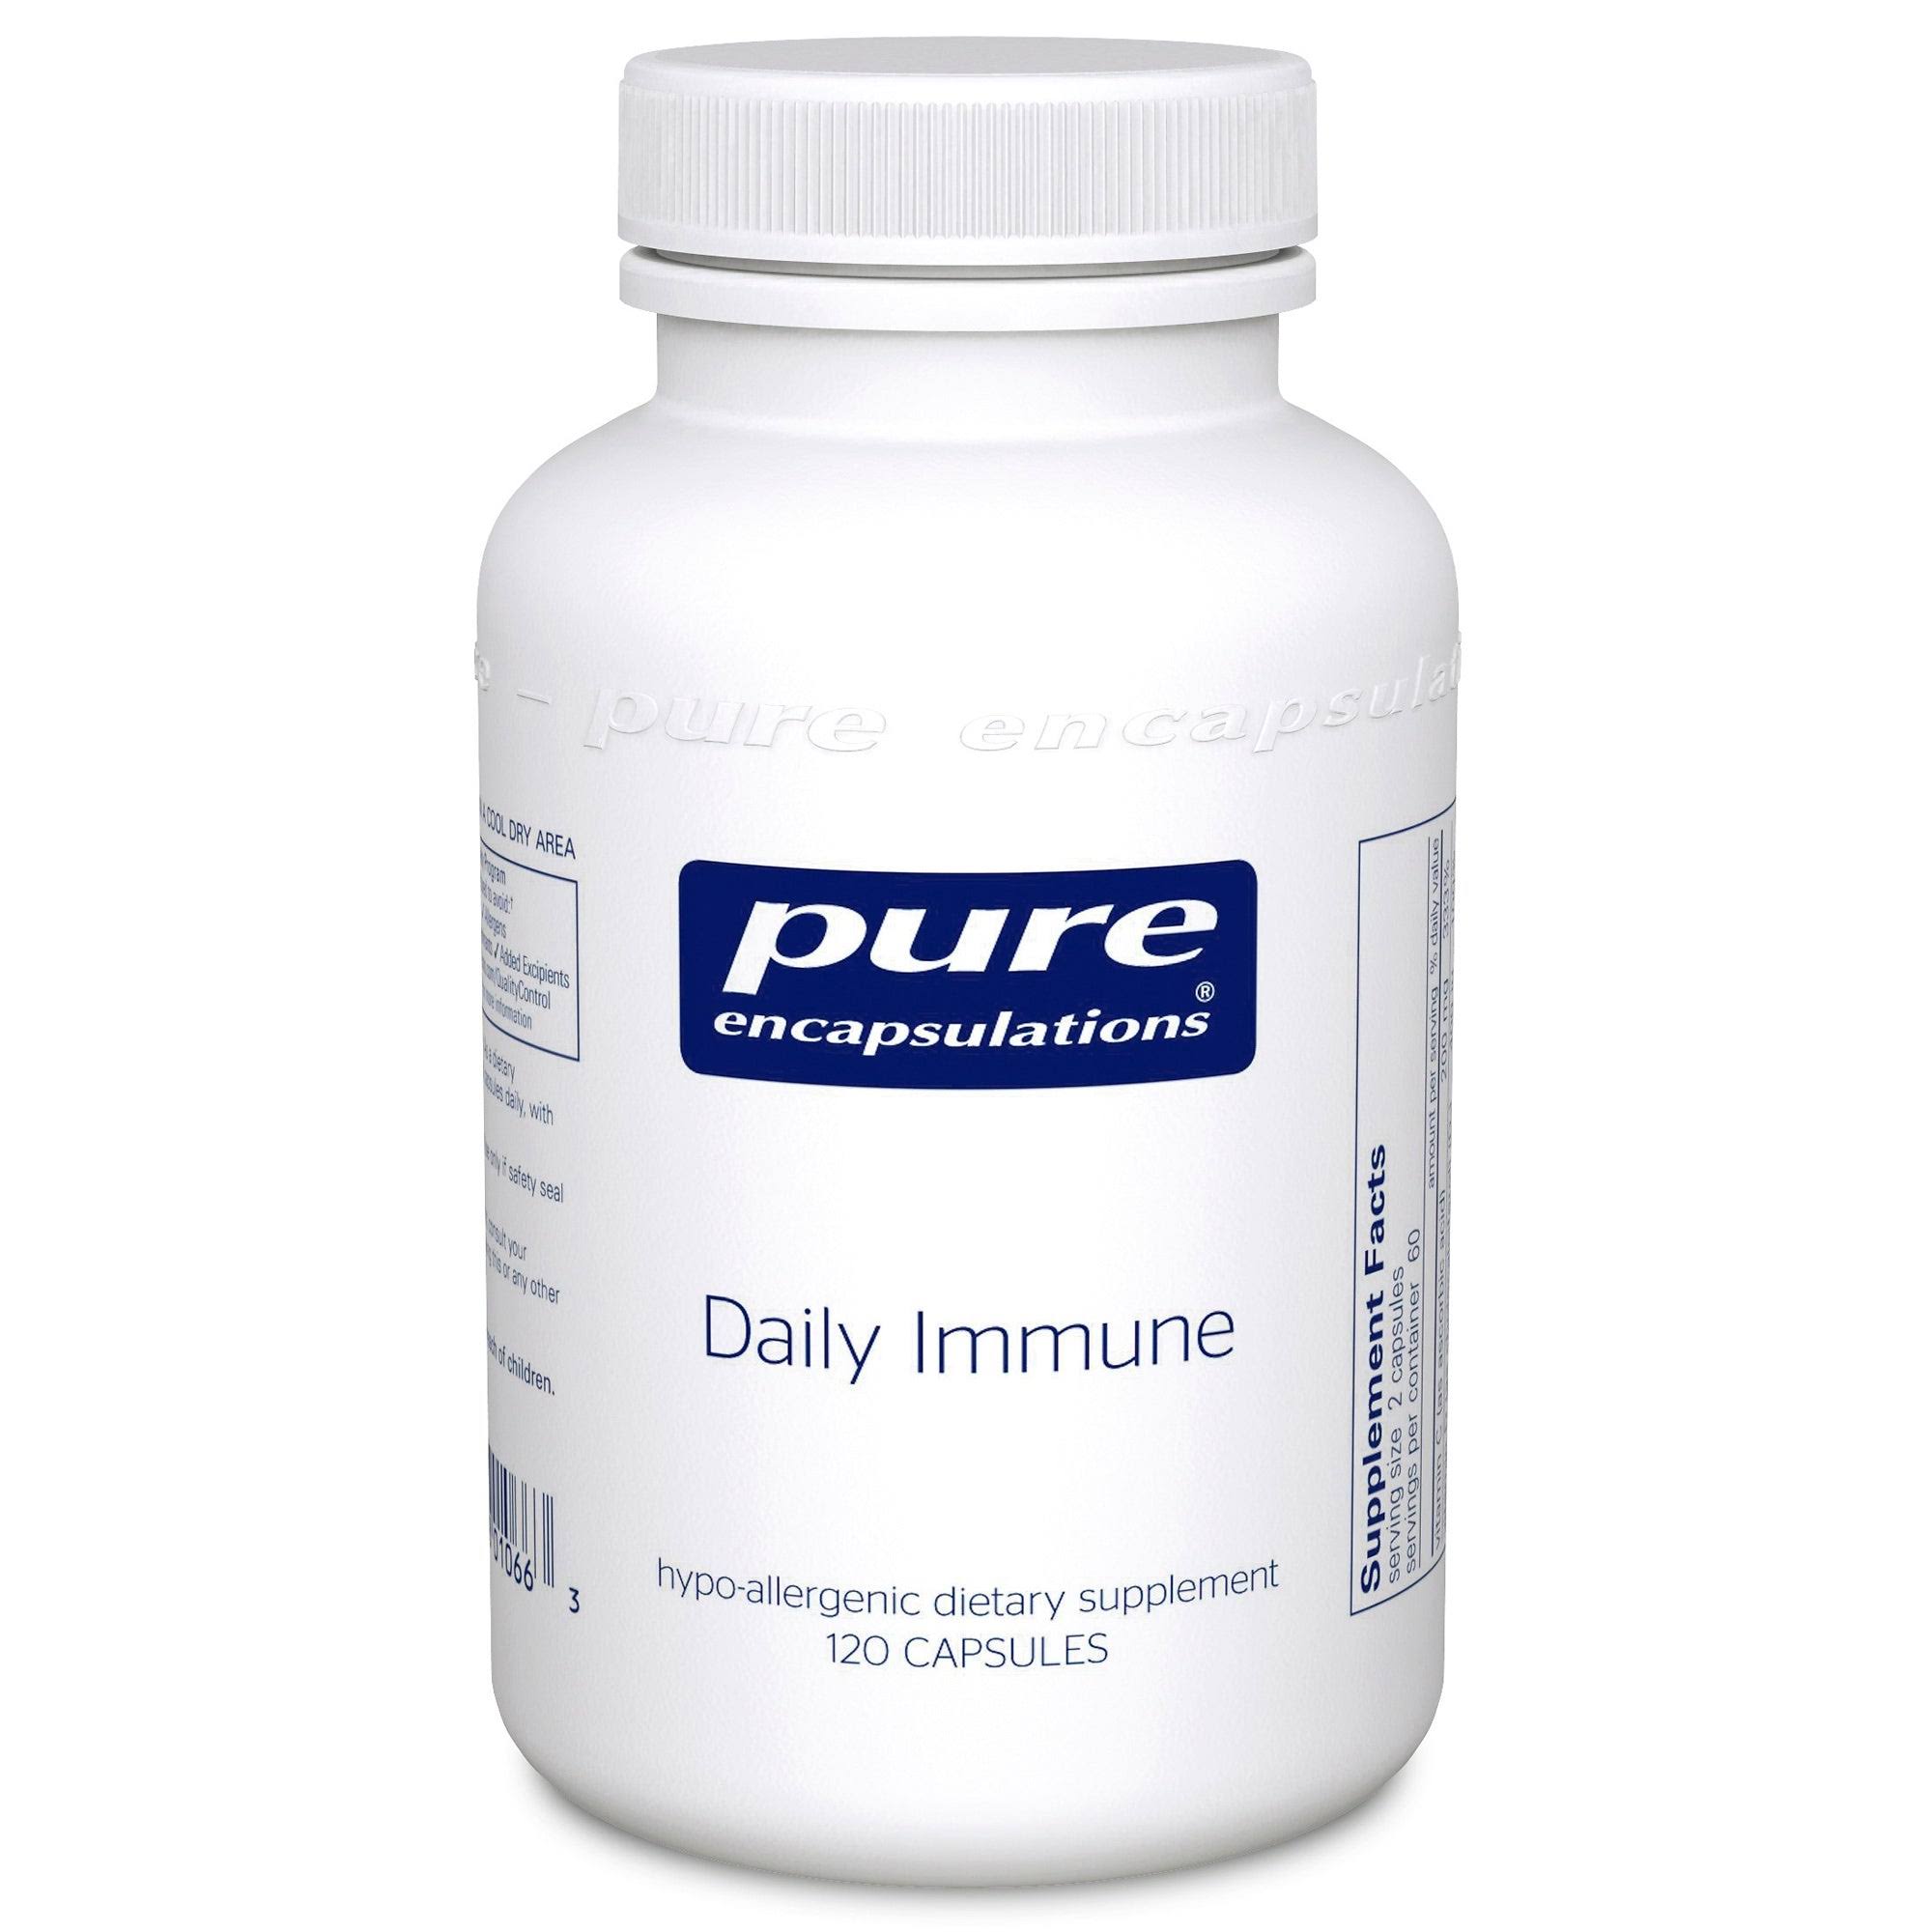 Pure Encapsulations Daily Immune Supplement - 120 Capsules